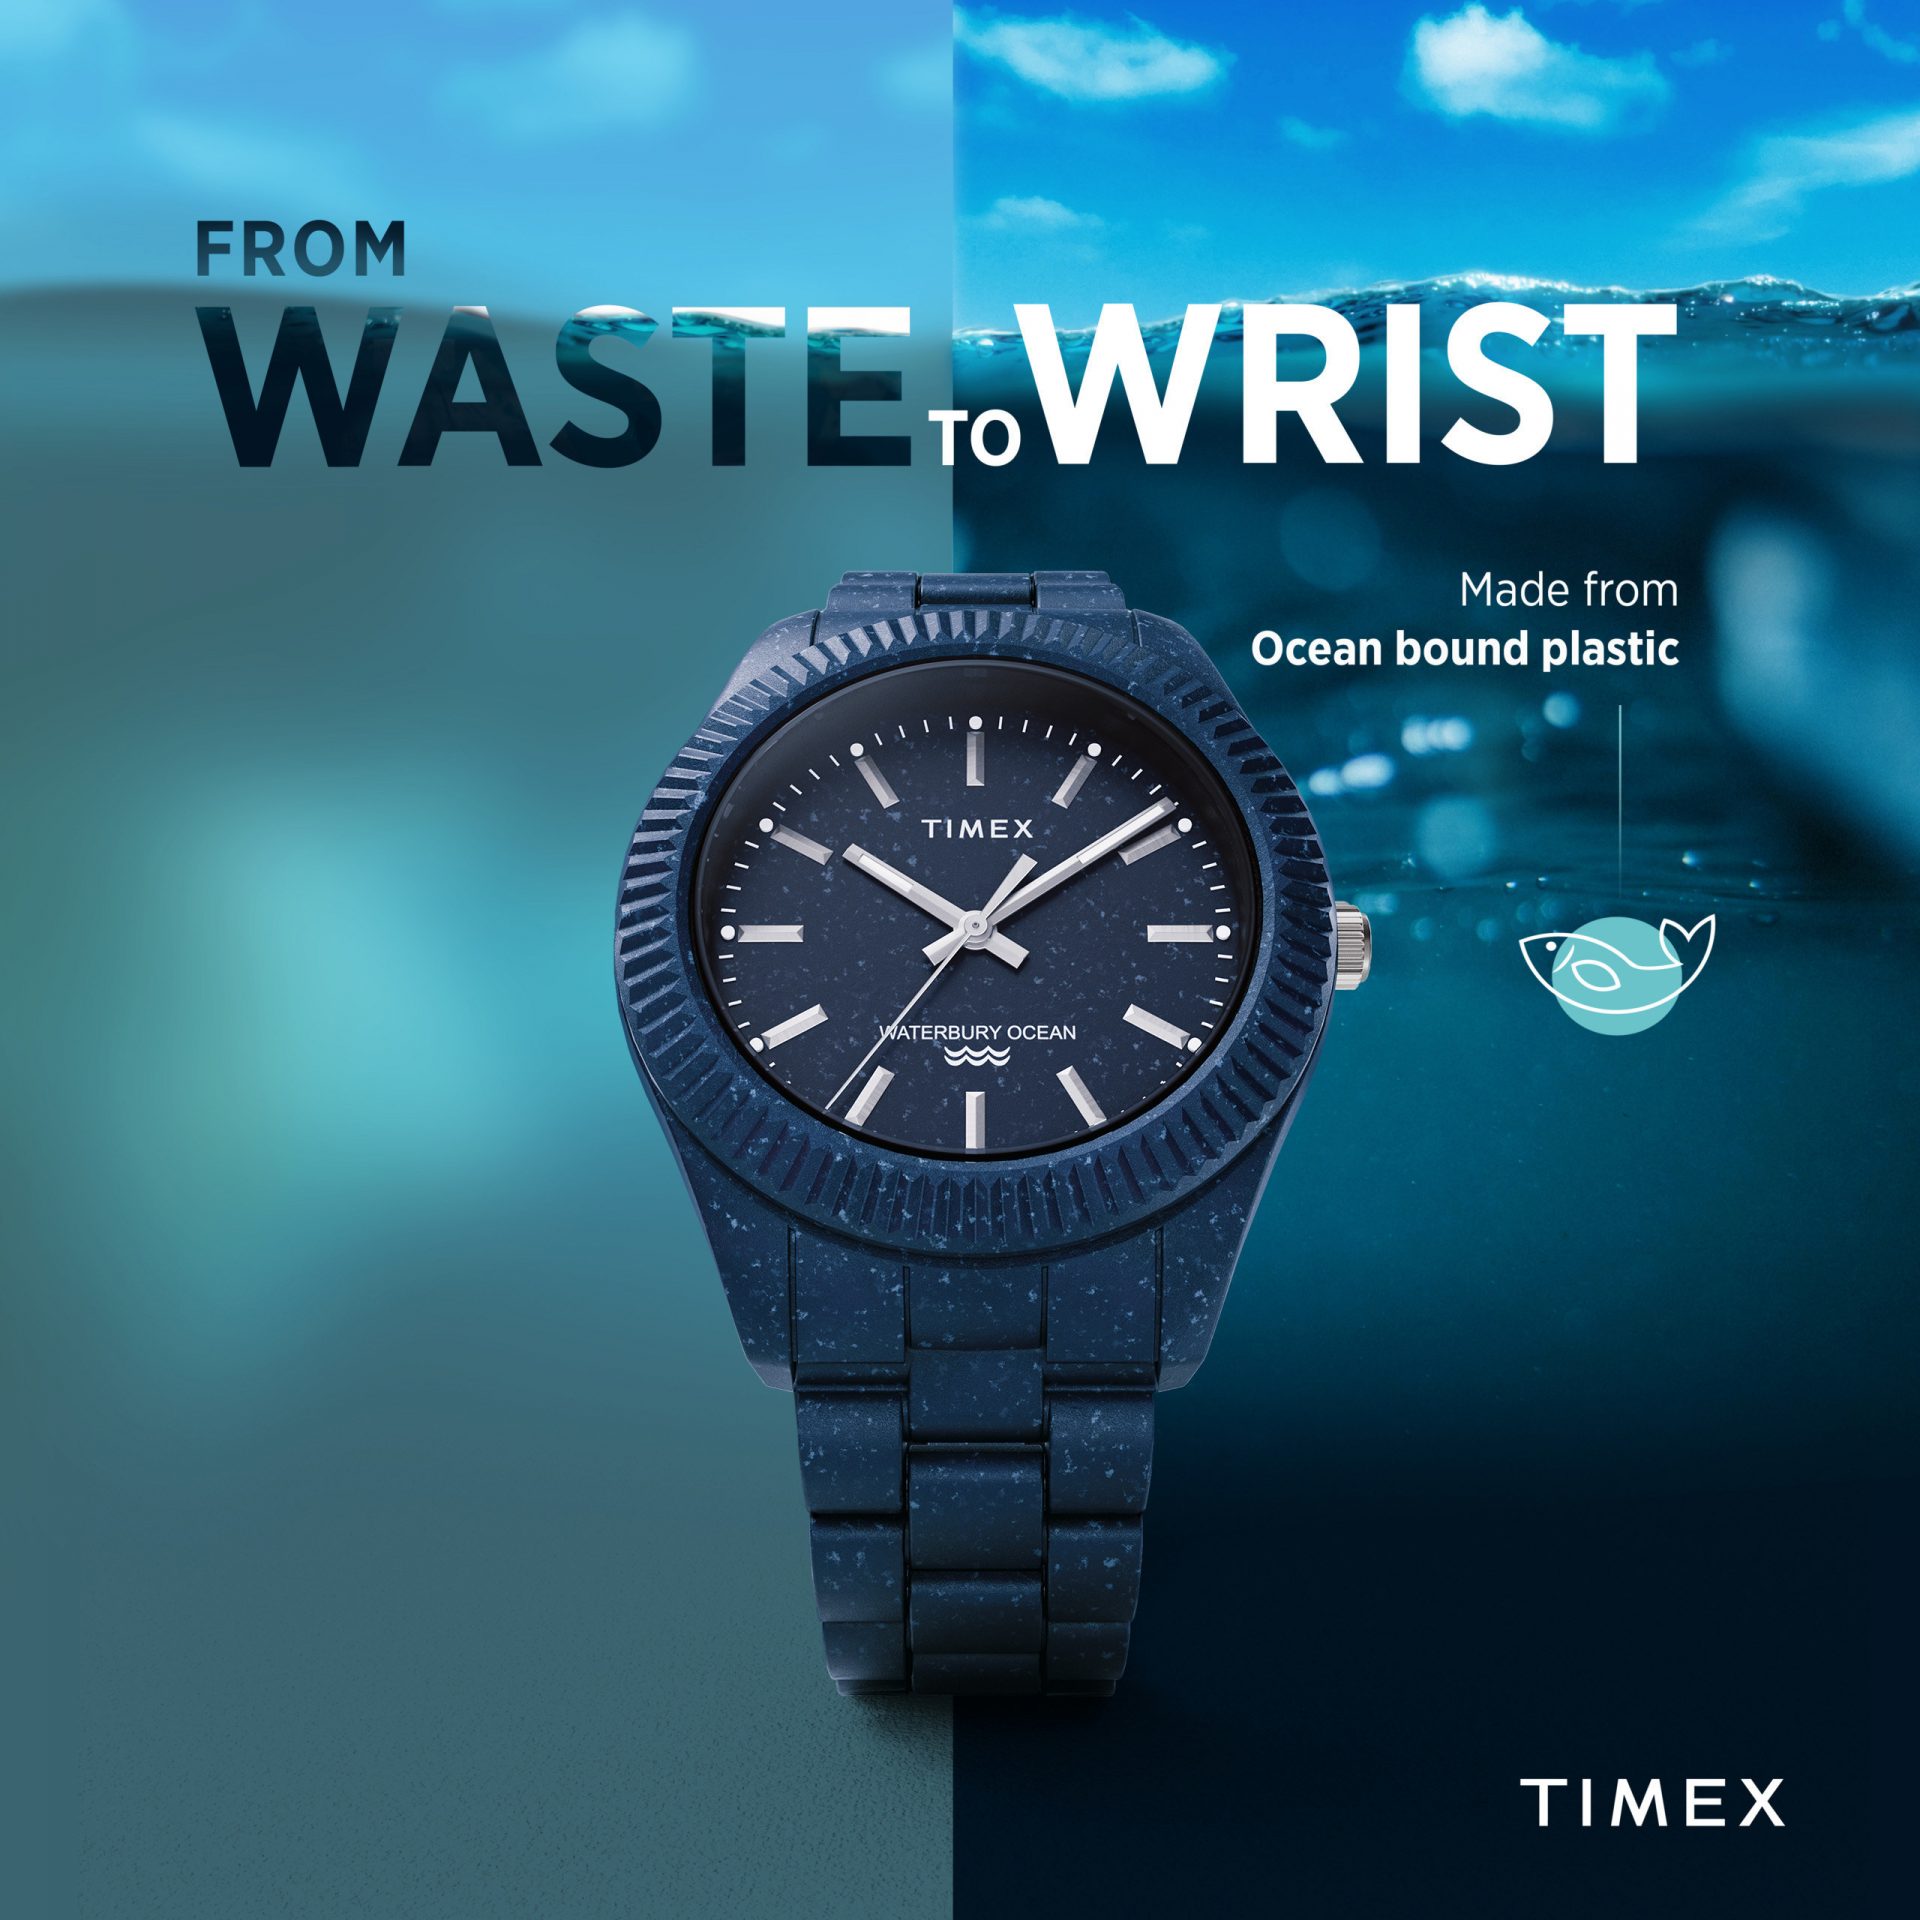 Timex waterbury ocean